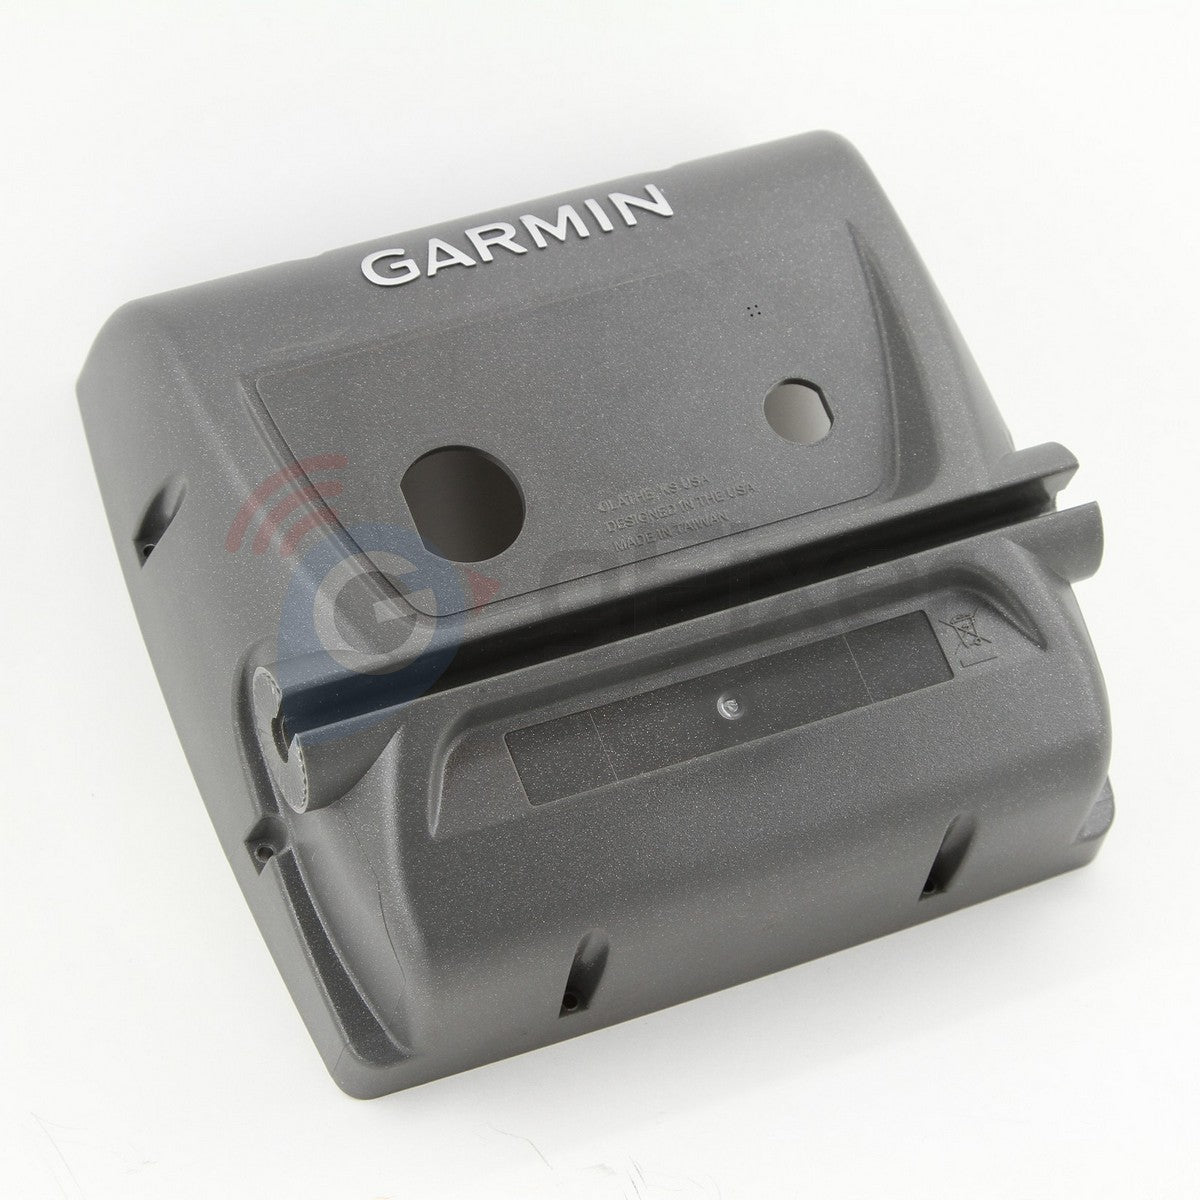 Back case for Garmin GPSMAP 525  New